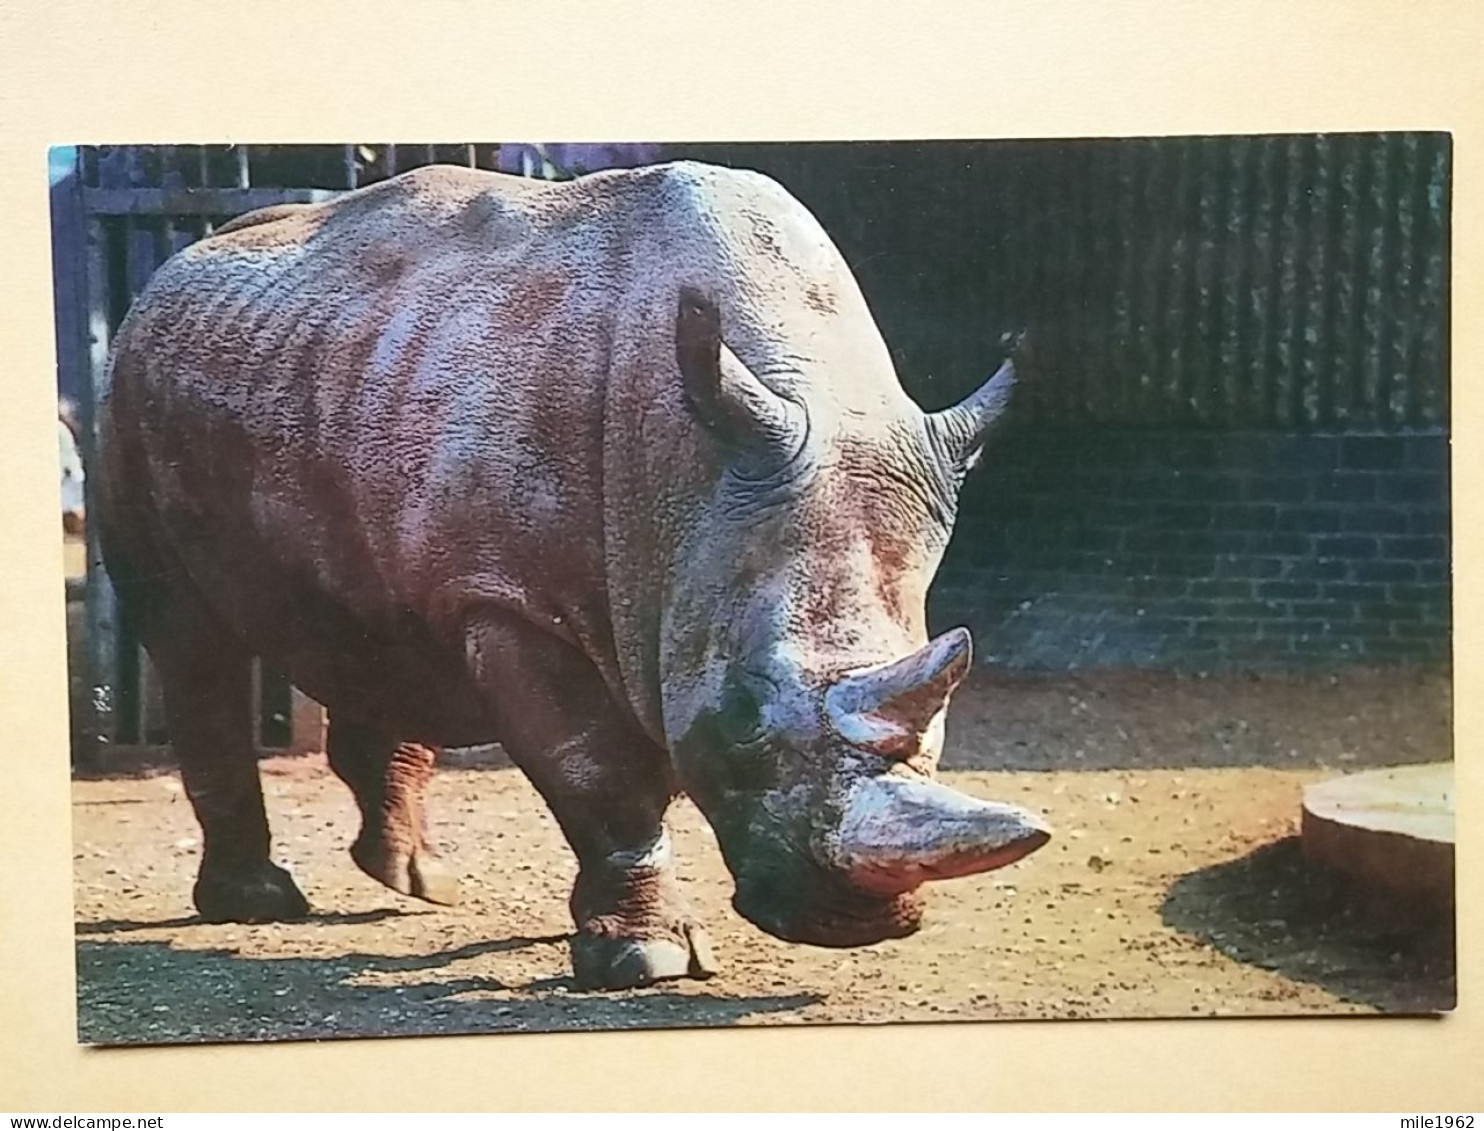 KOV 506-48 - RHINOCEROS, RHINO, LONDON ZOO GARDEN - Rhinozeros